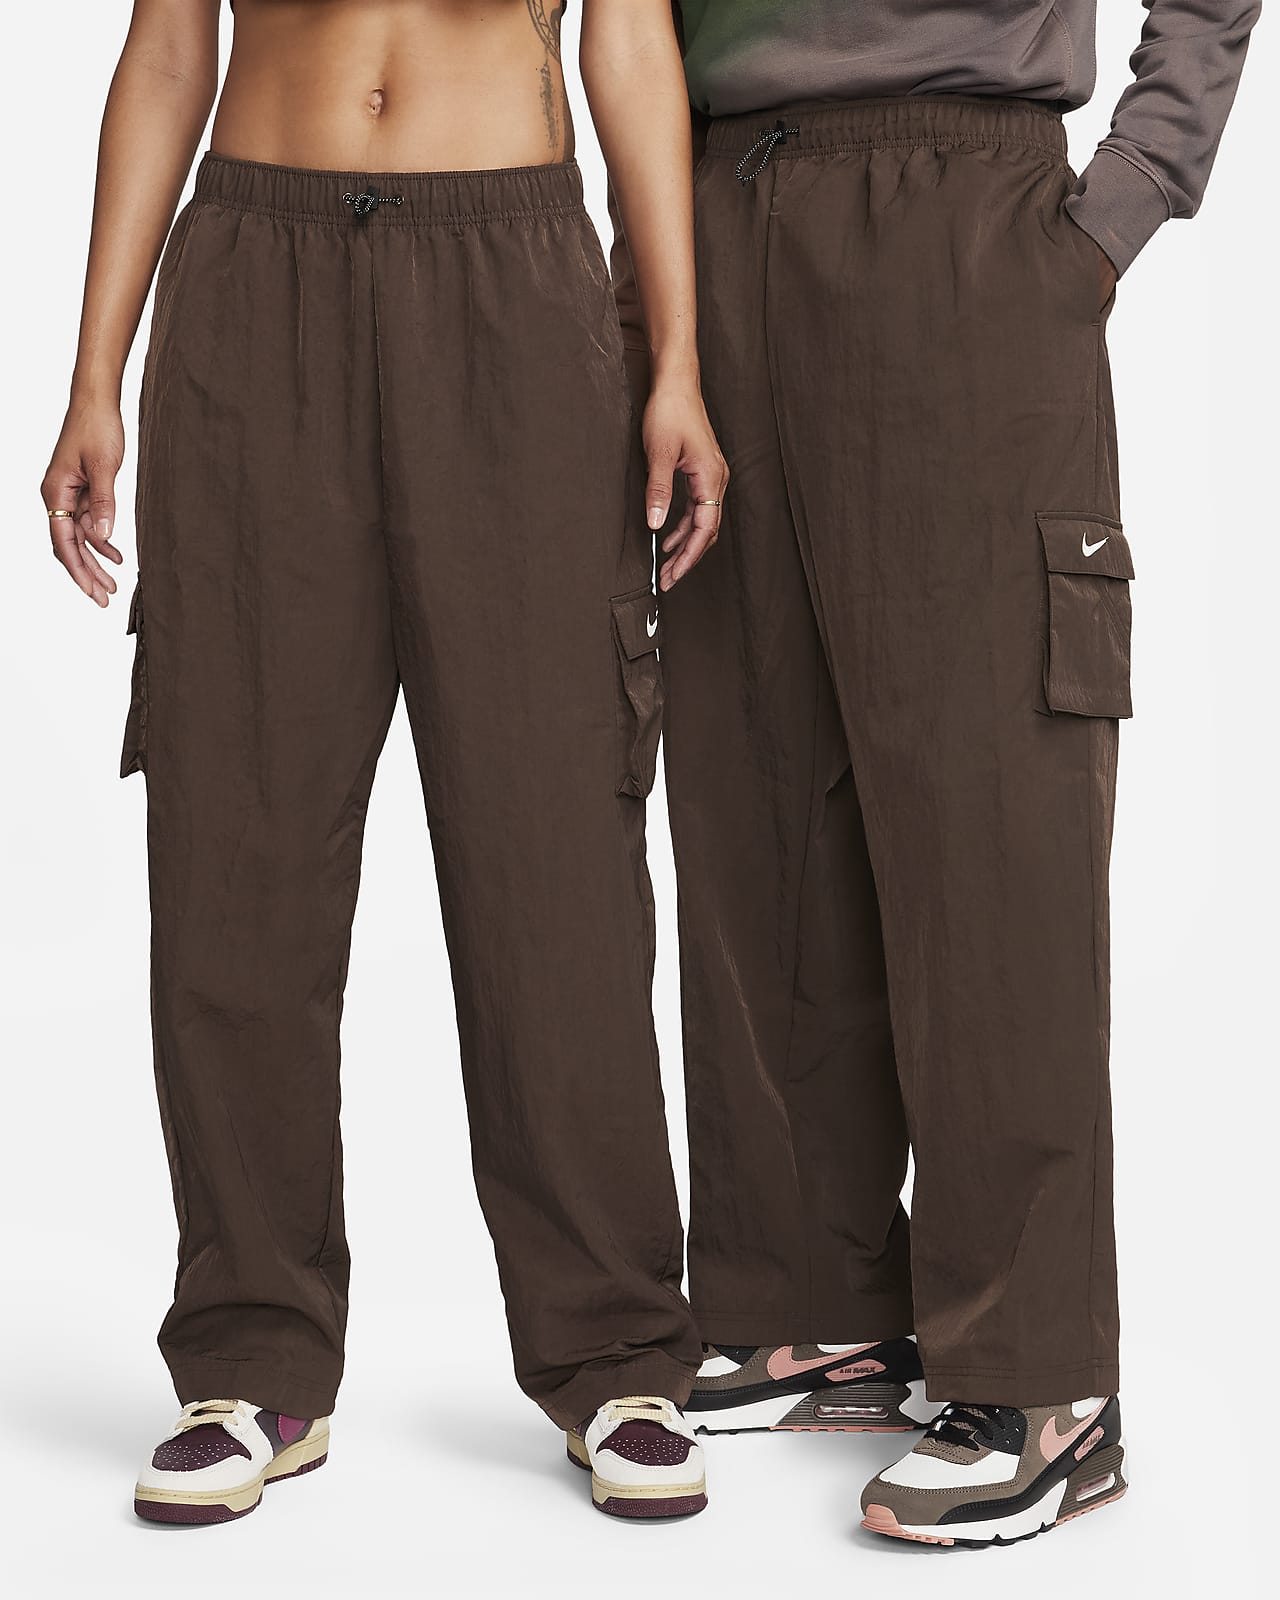 Buy Brown Trousers  Pants for Women by Broadstar Online  Ajiocom